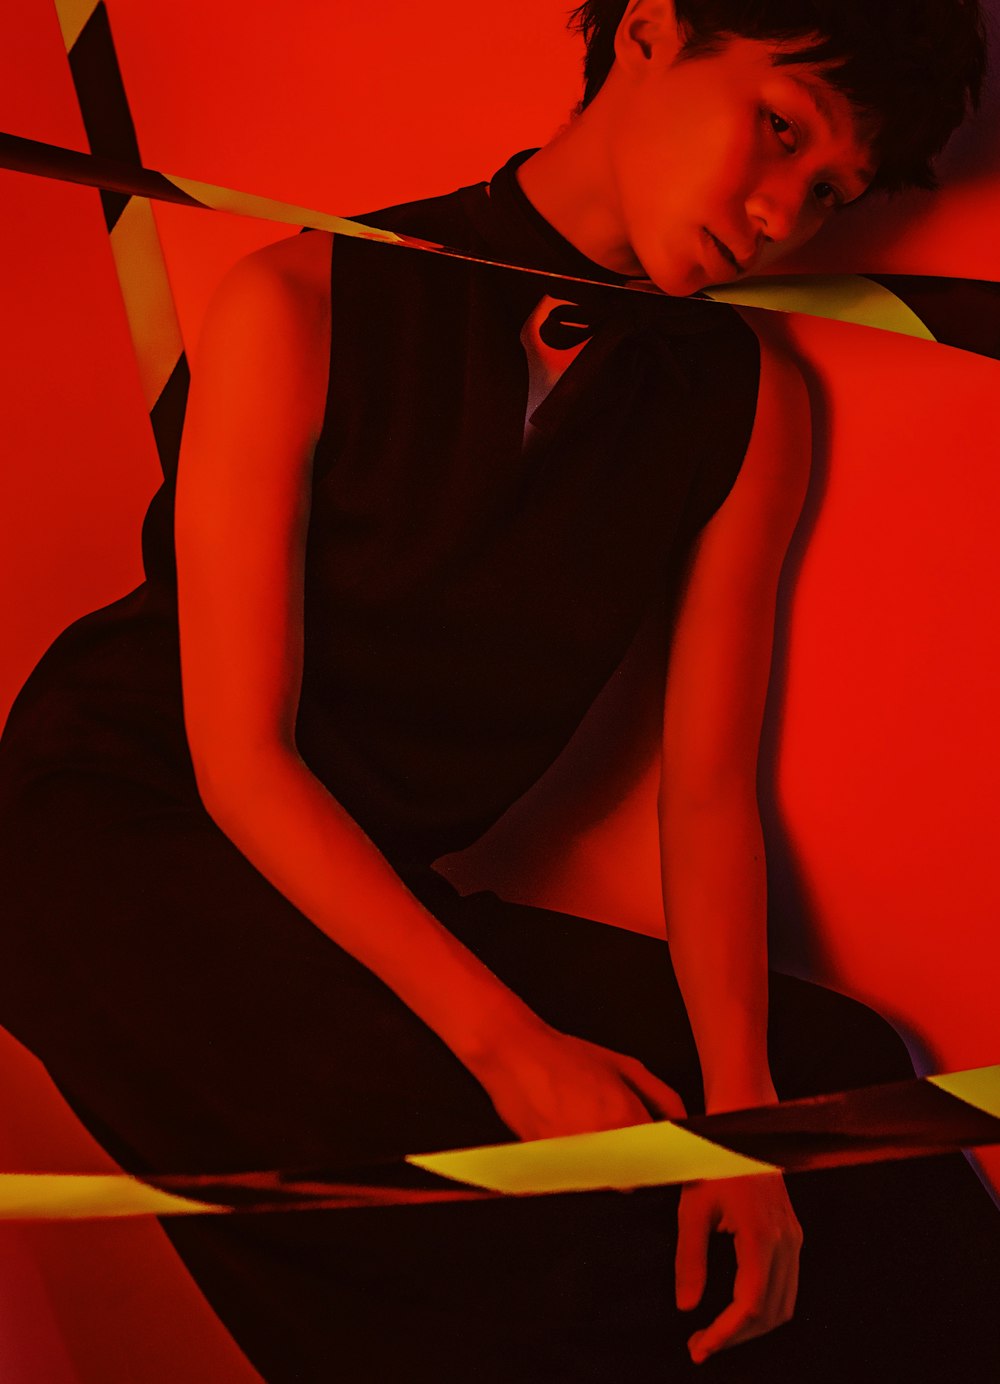 빨간 벽에 앉아 검은 드레스를 입은 여자